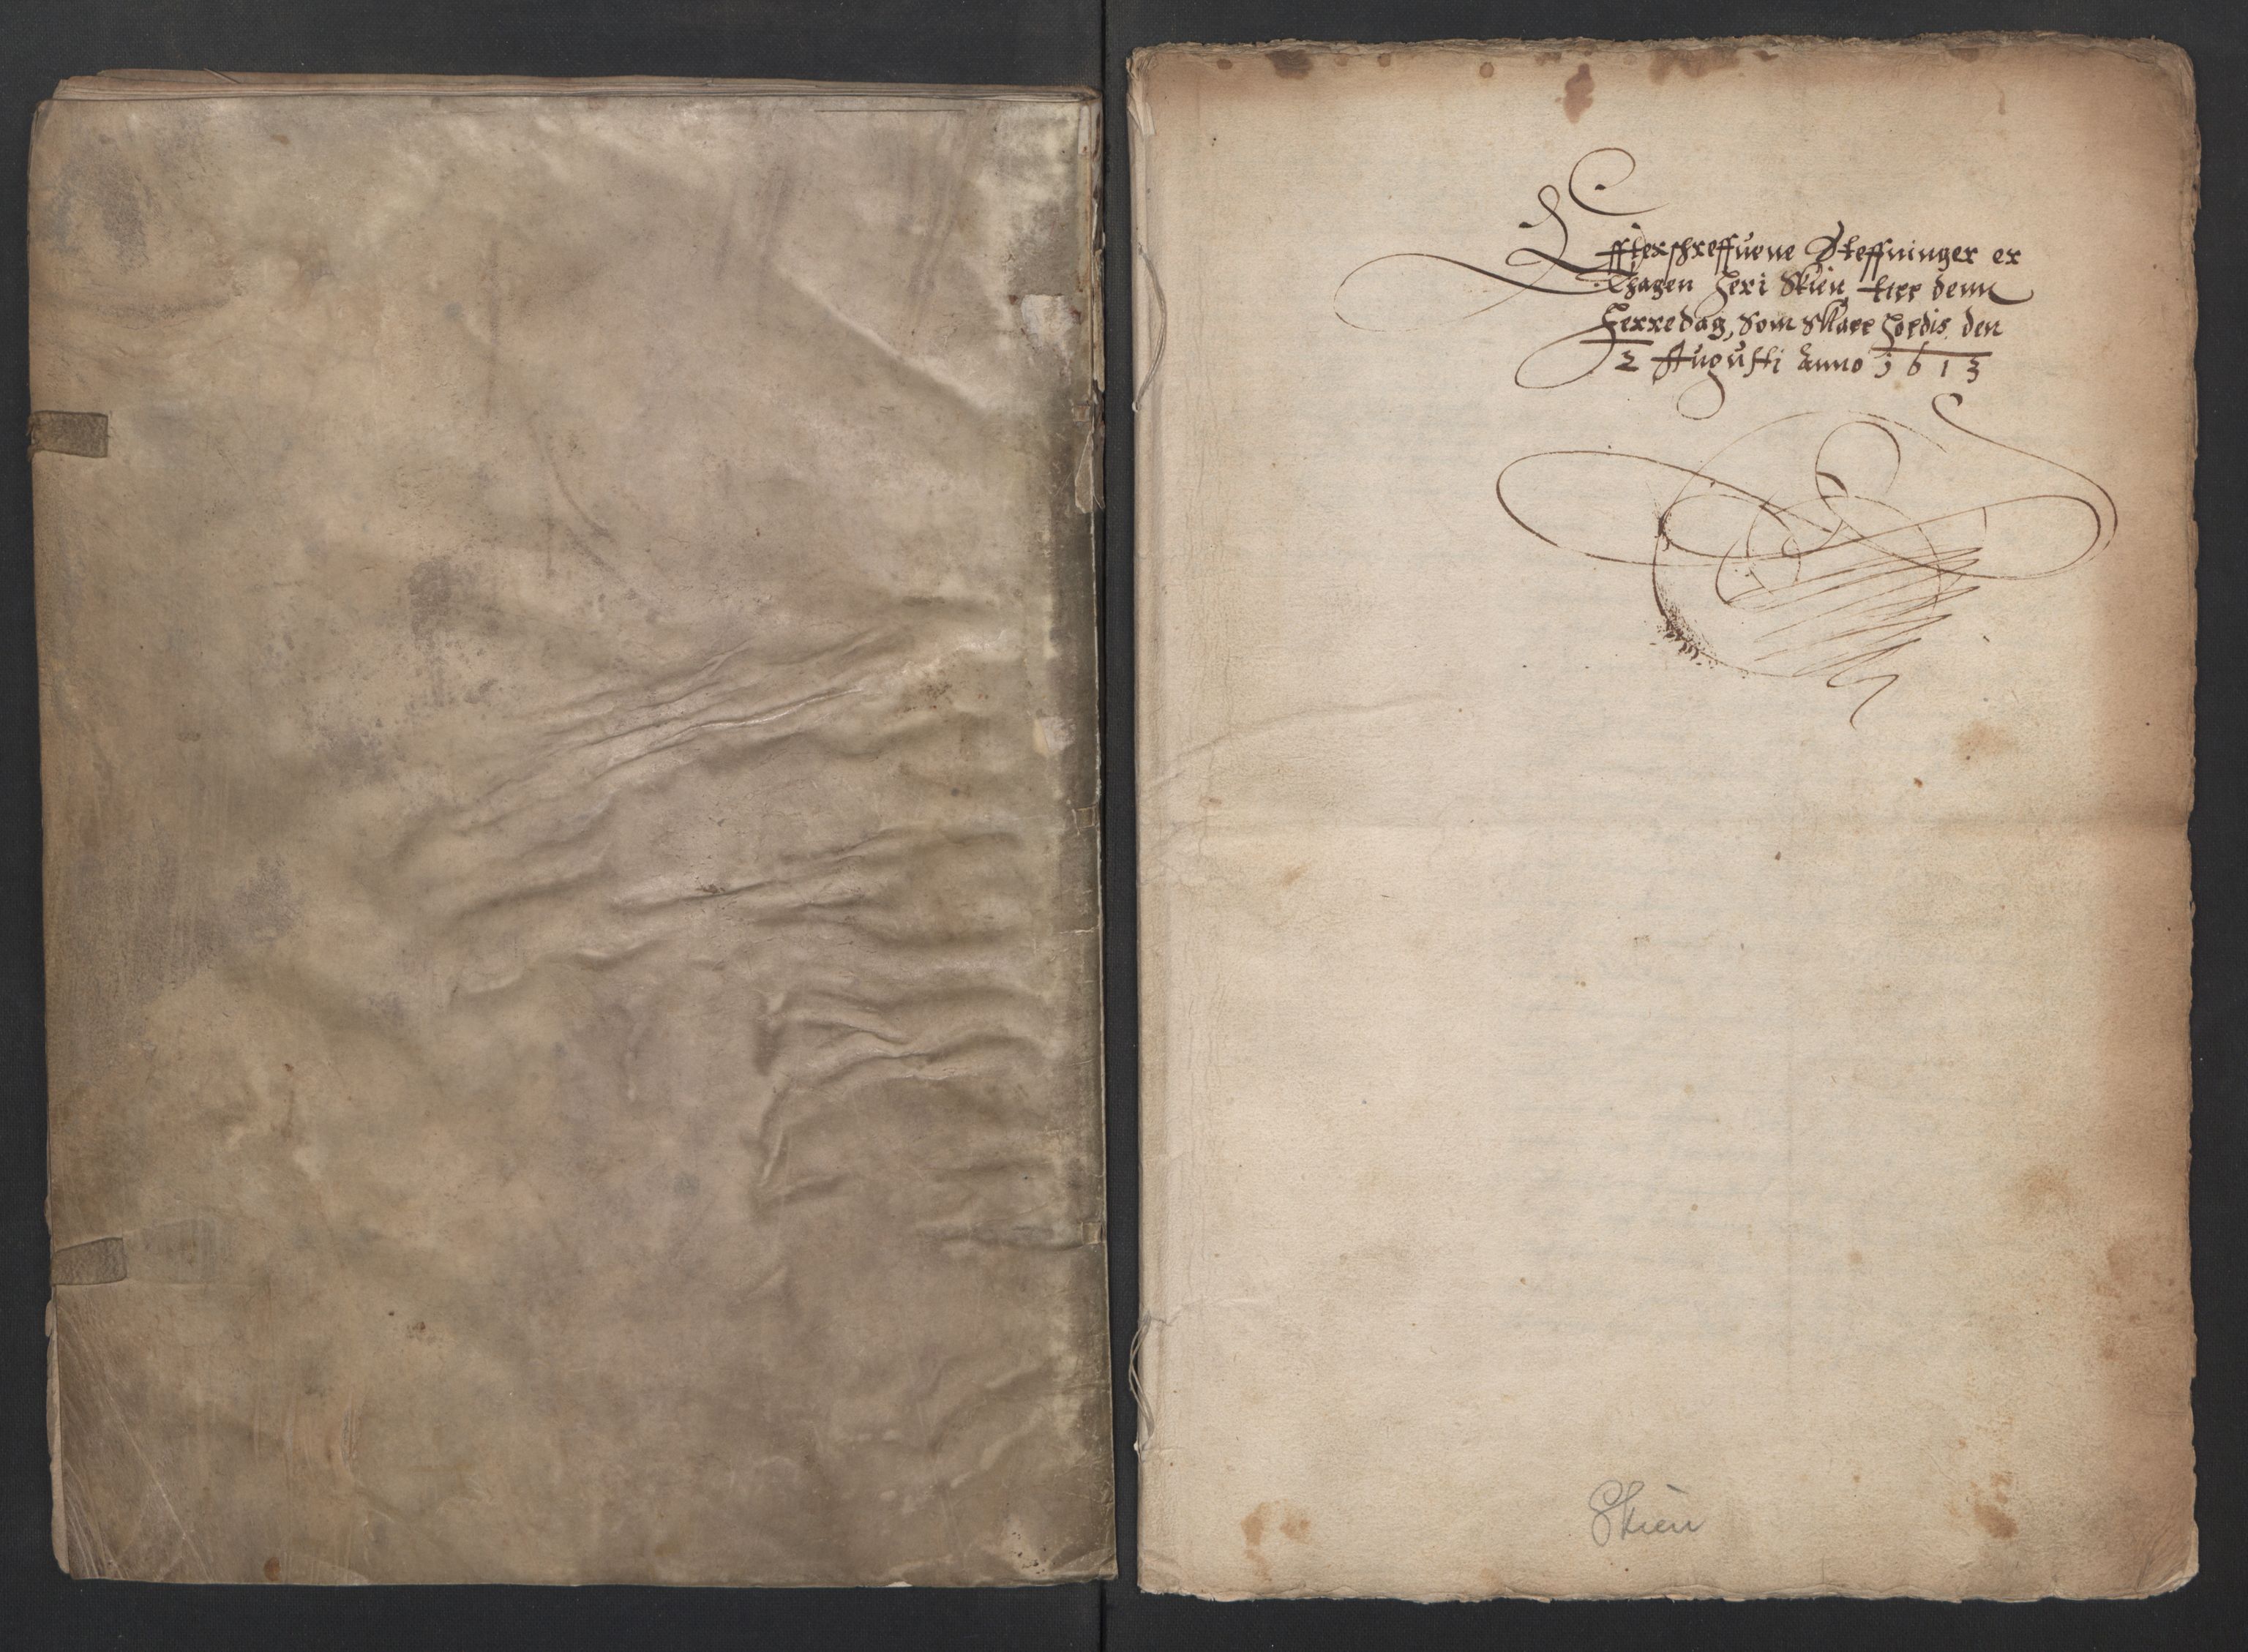 Herredagen 1539-1664  (Kongens Retterting), RA/EA-2882/A/L0009: Dombok   Stevningsbok, 1613